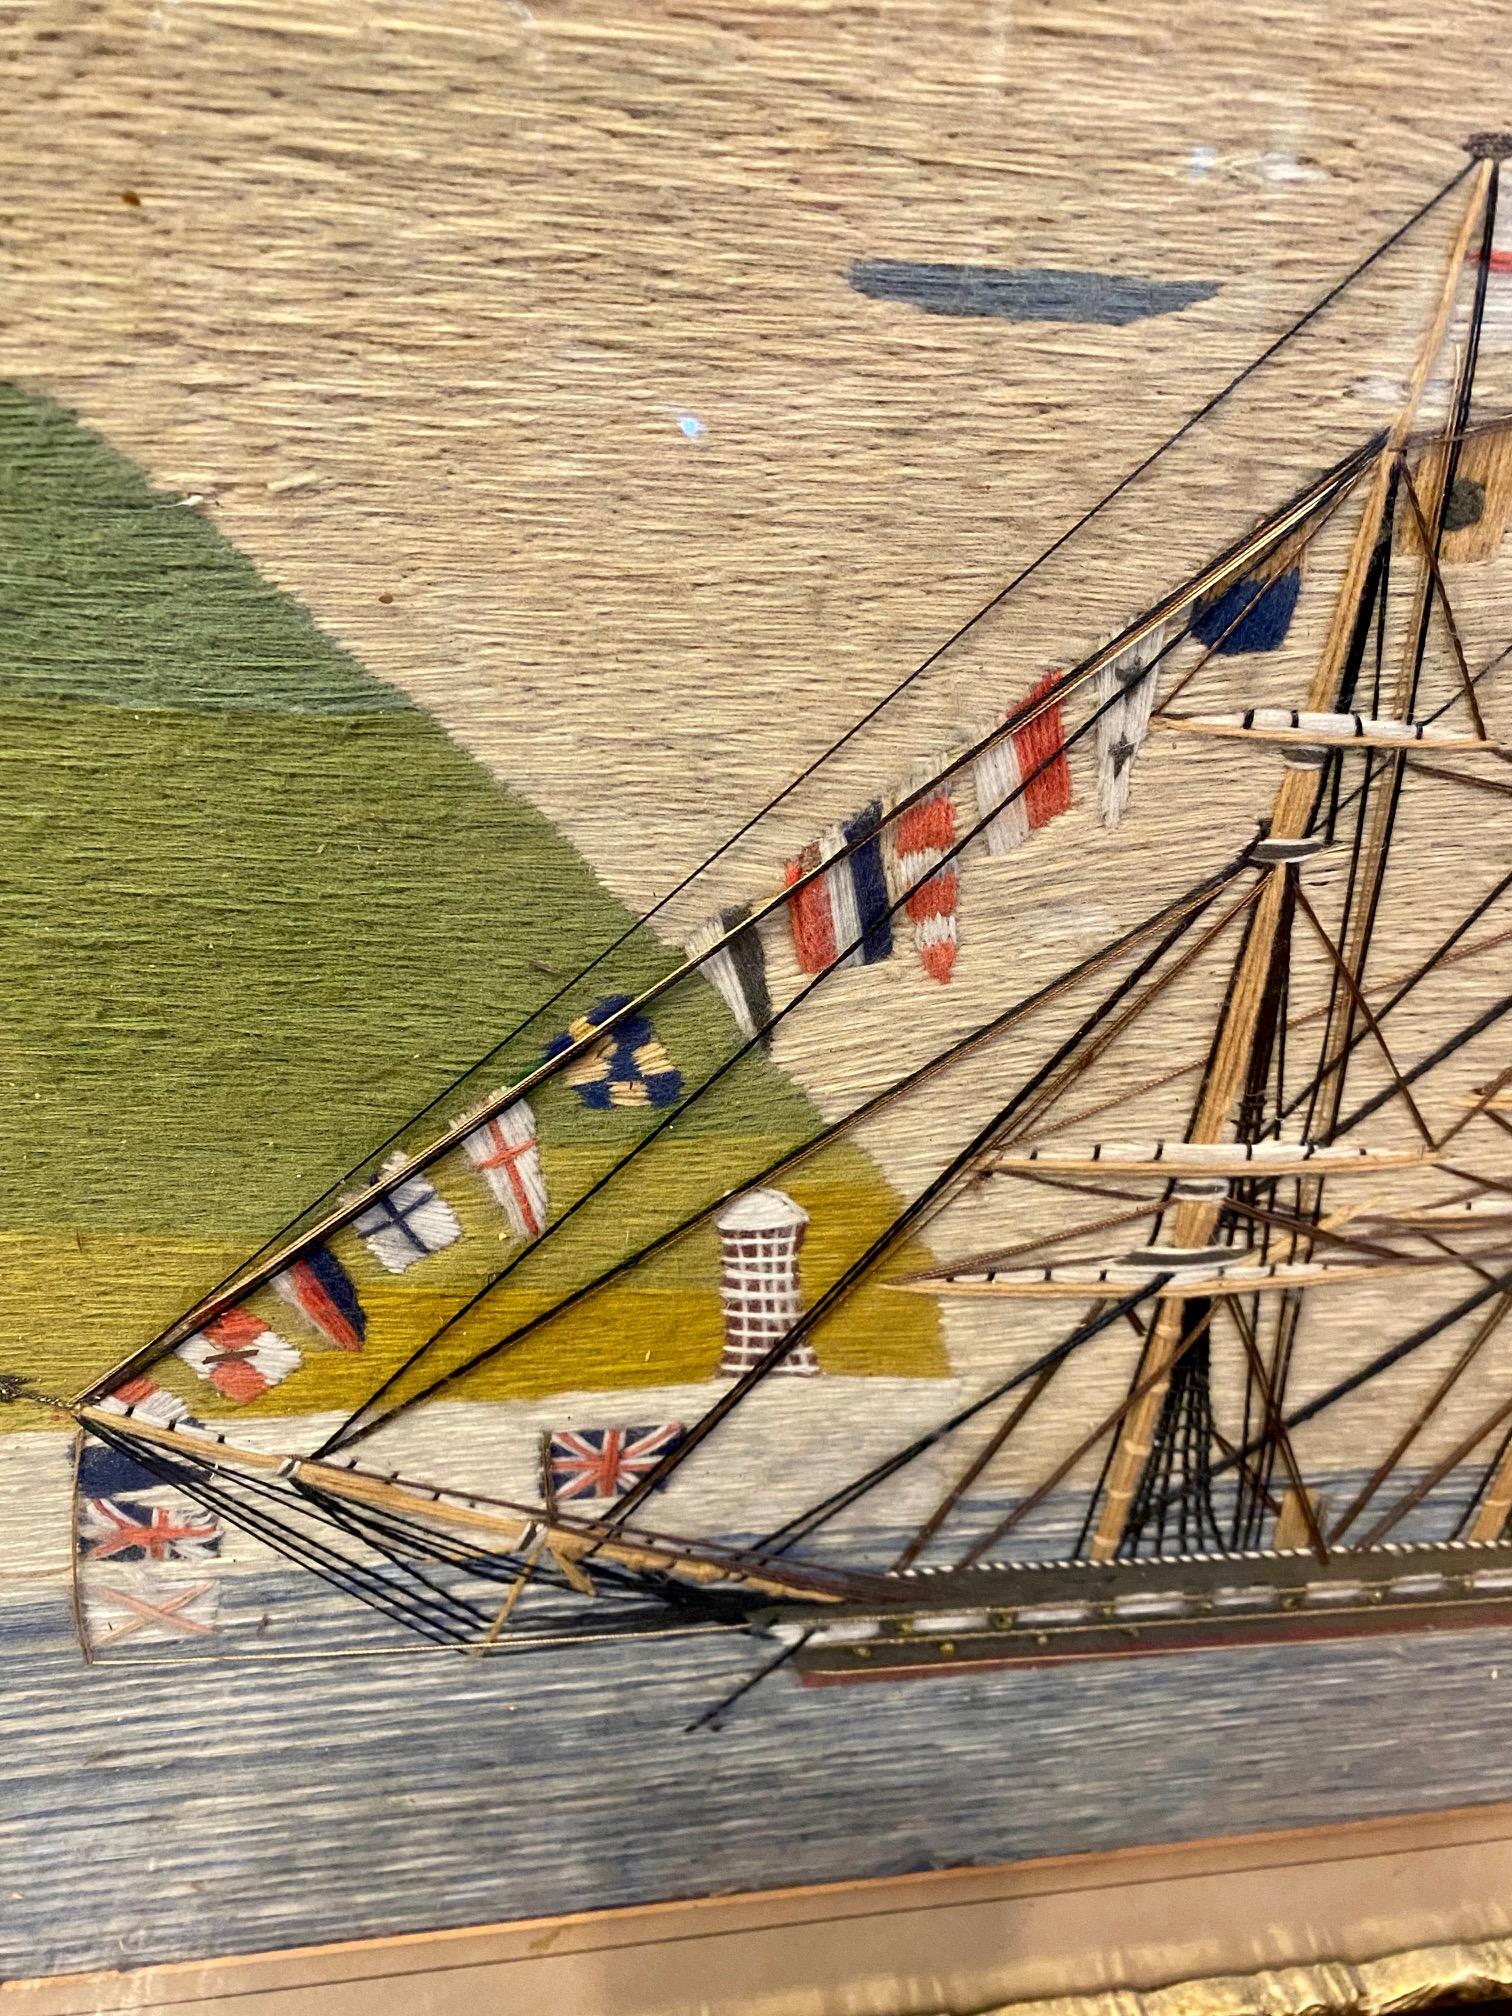 wollarbeit eines Seemanns aus dem 19. Jahrhundert mit einer britischen Fregatte vor Anker, um 1880, geschmückt mit einer Reihe britischer Flaggen und einer ganzen Reihe von Signalflaggen, die an den Stagen aufgereiht sind. Der Rumpf weist die